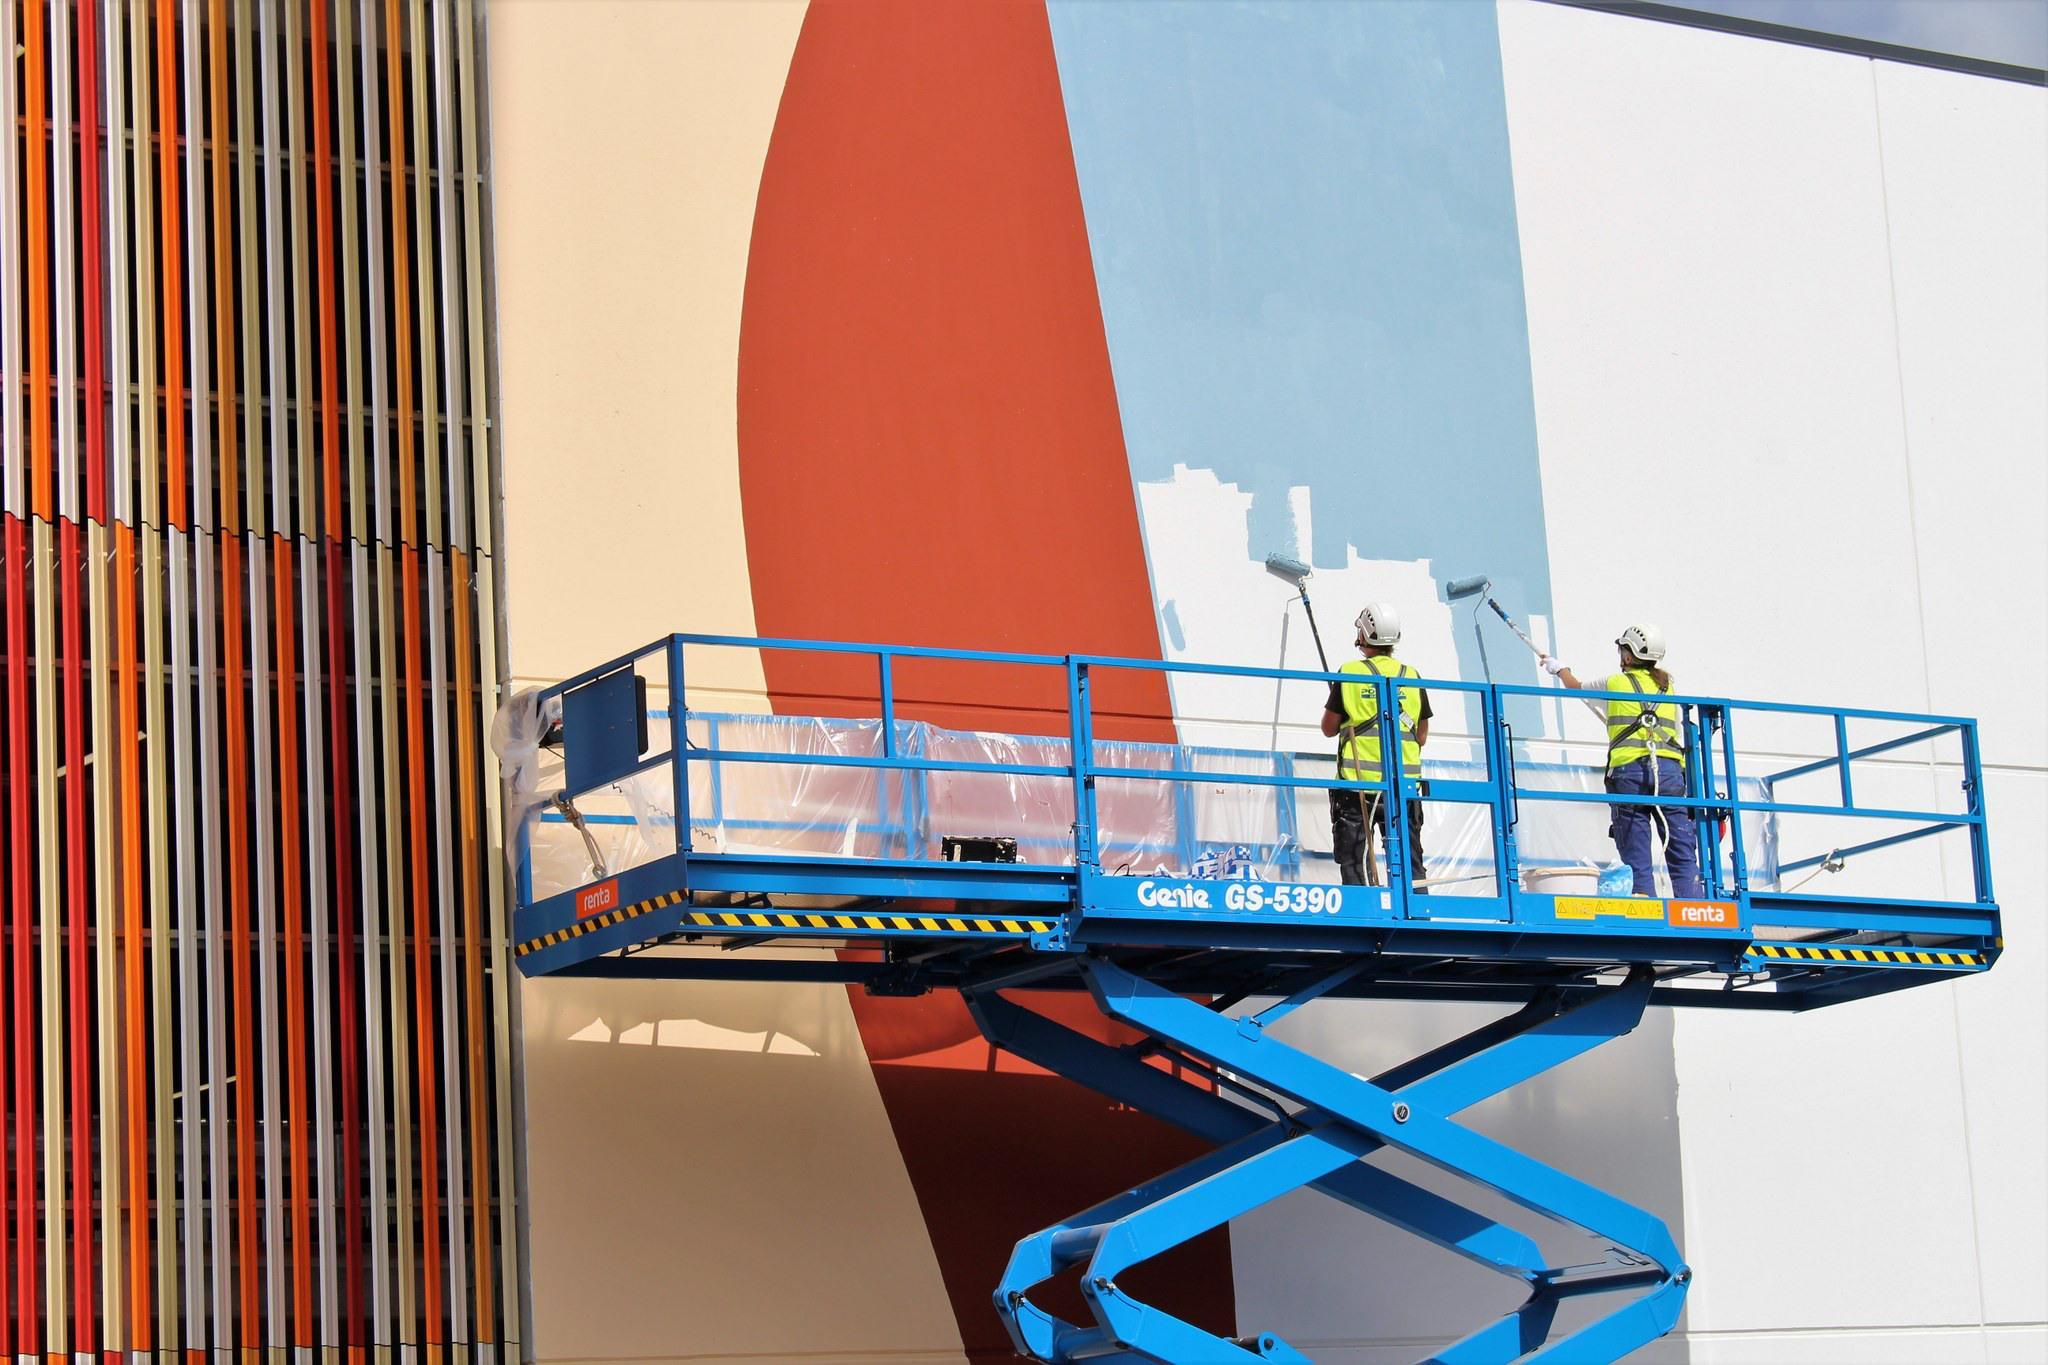 Kaksi henkilöä maalaavat valtavaa ja värikästä taideteosta rakennuksen ulkoseinää.